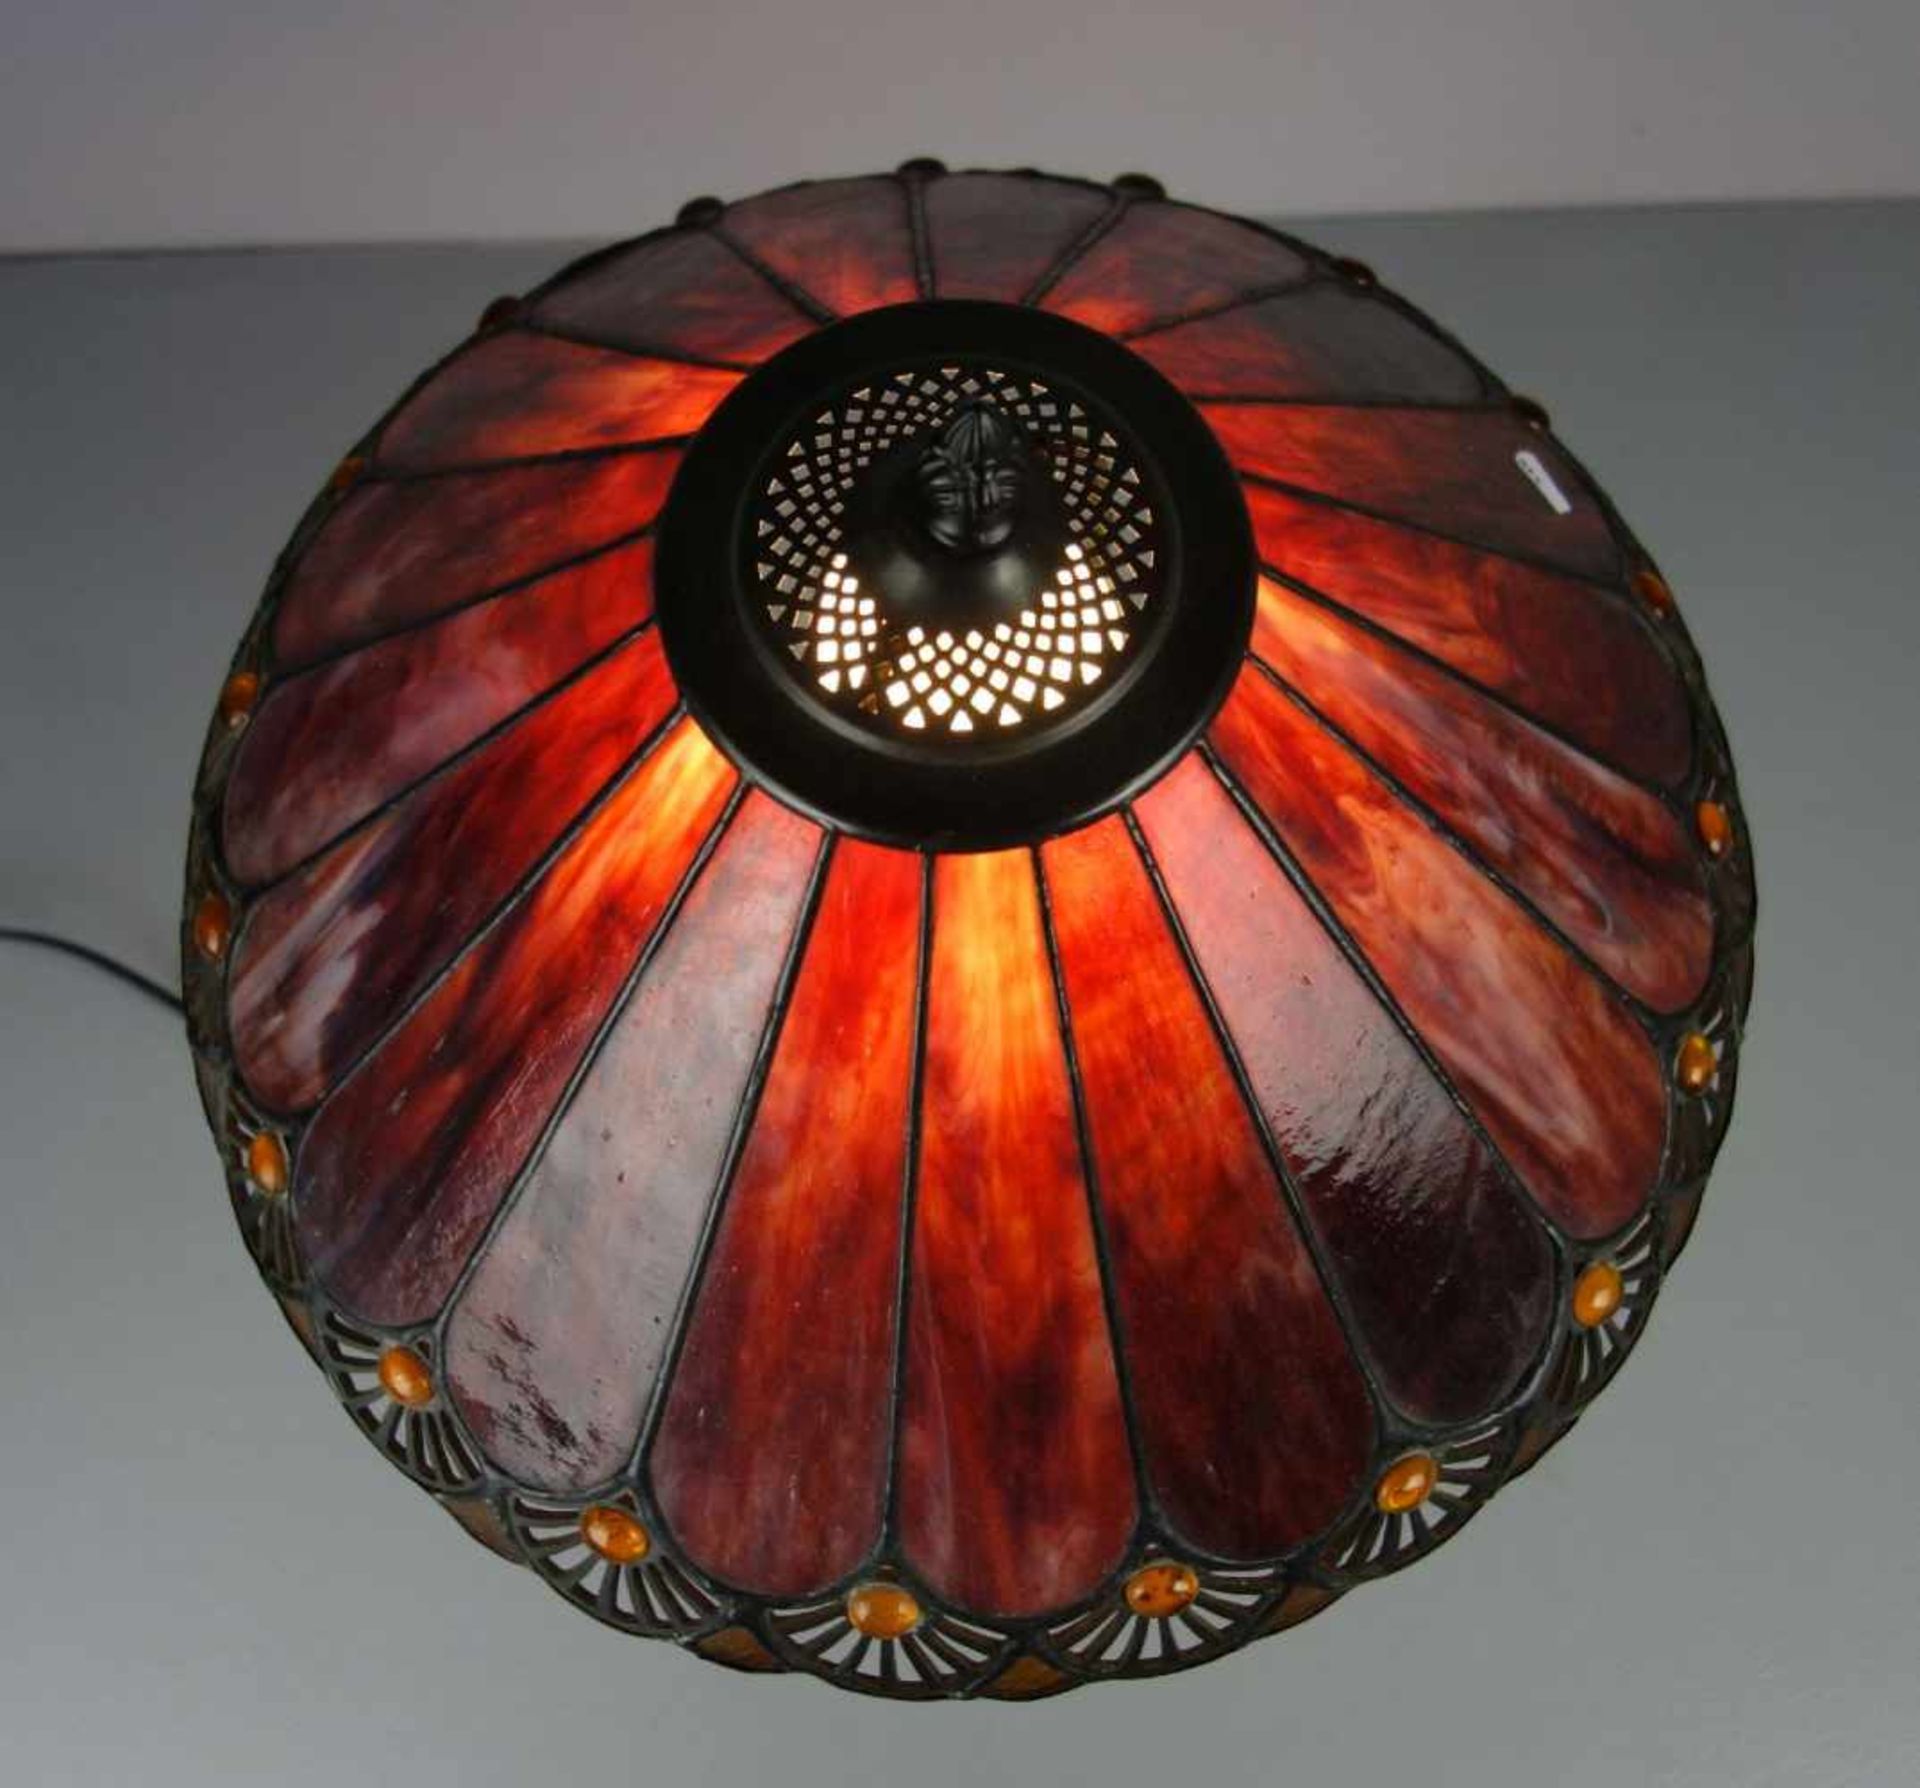 LAMPE / TISCHLAMPE im Stil einer Tiffany-Lampe, 2. H. 20. Jh., bronzierter Massefuß in - Bild 3 aus 4